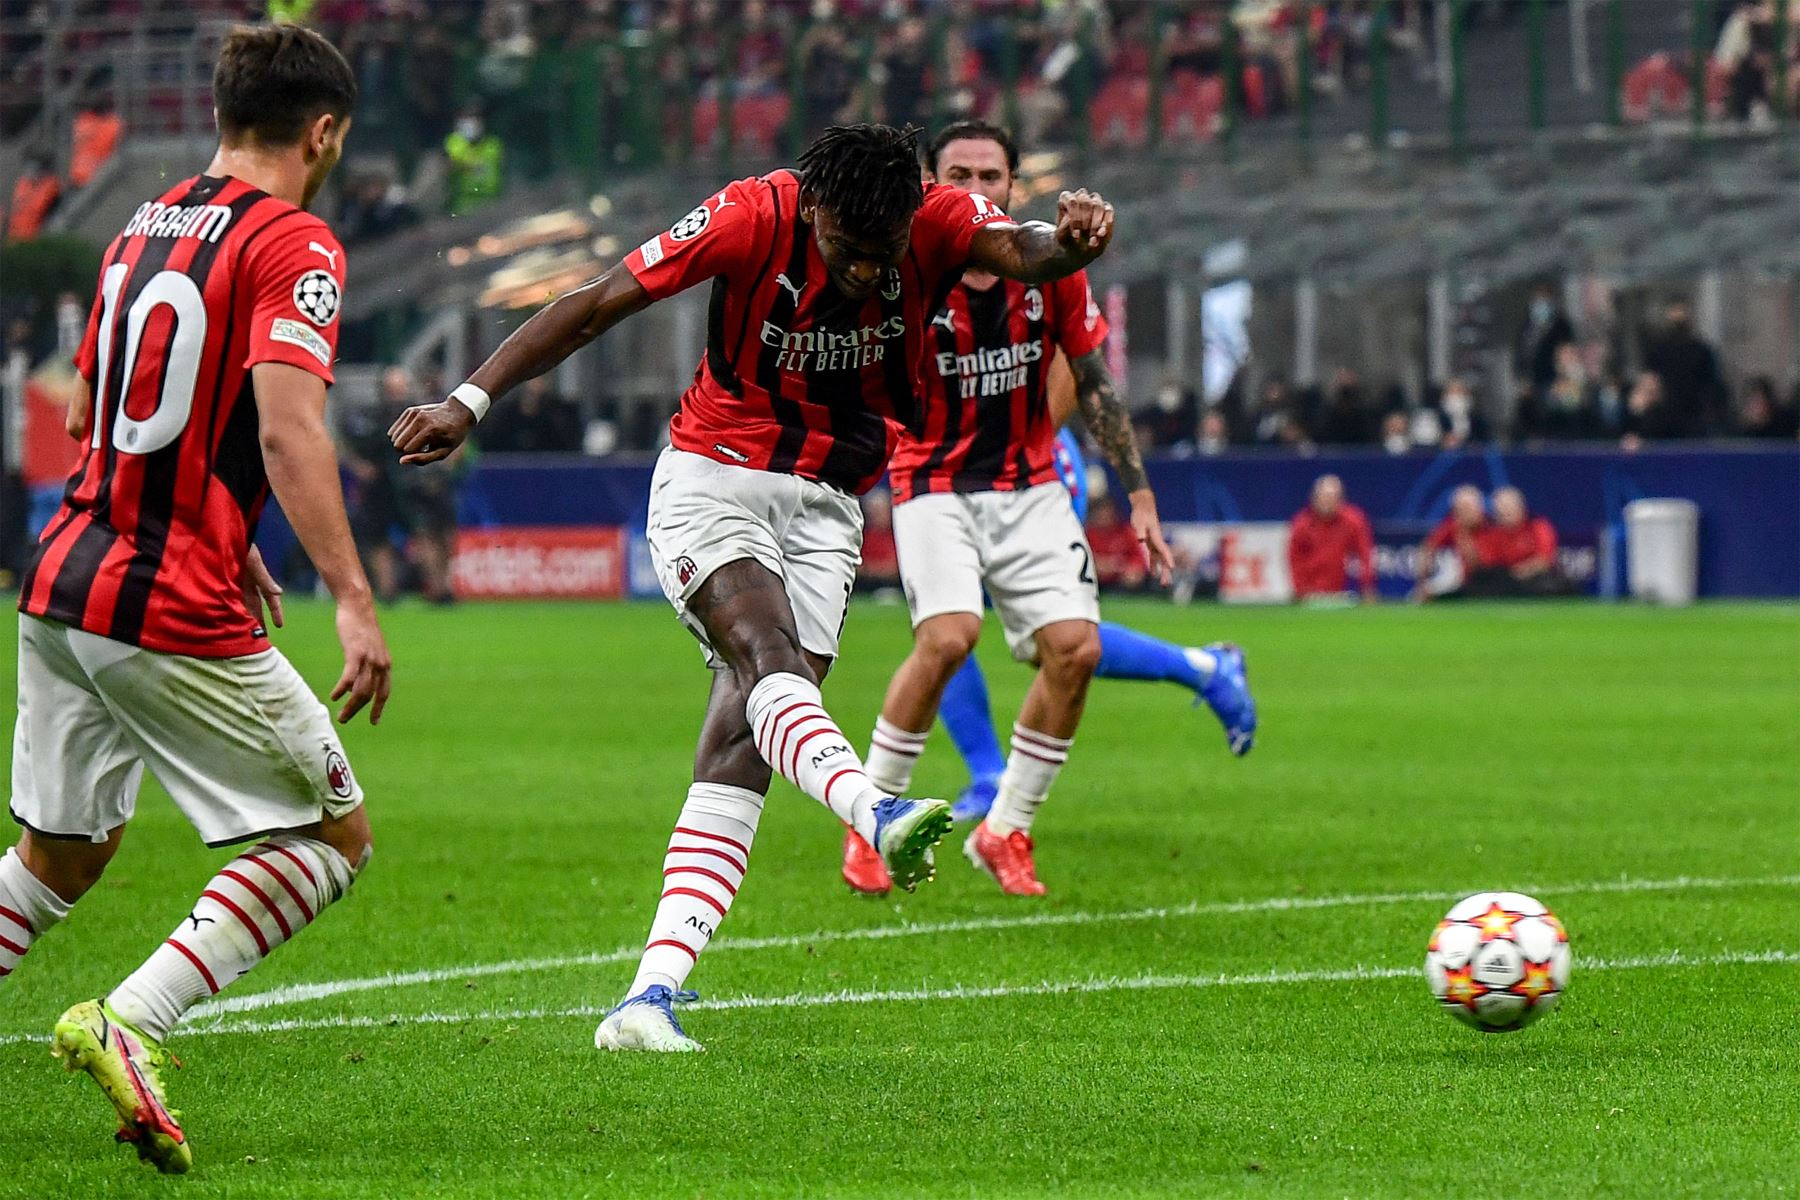 El delantero portugués del AC Milan Rafael Leao dispara para abrir el marcador durante el partido de fútbol del Grupo B de la Liga de Campeones de la UEFA entre el AC Milan y el Atlético de Madrid.
Foto: AFP